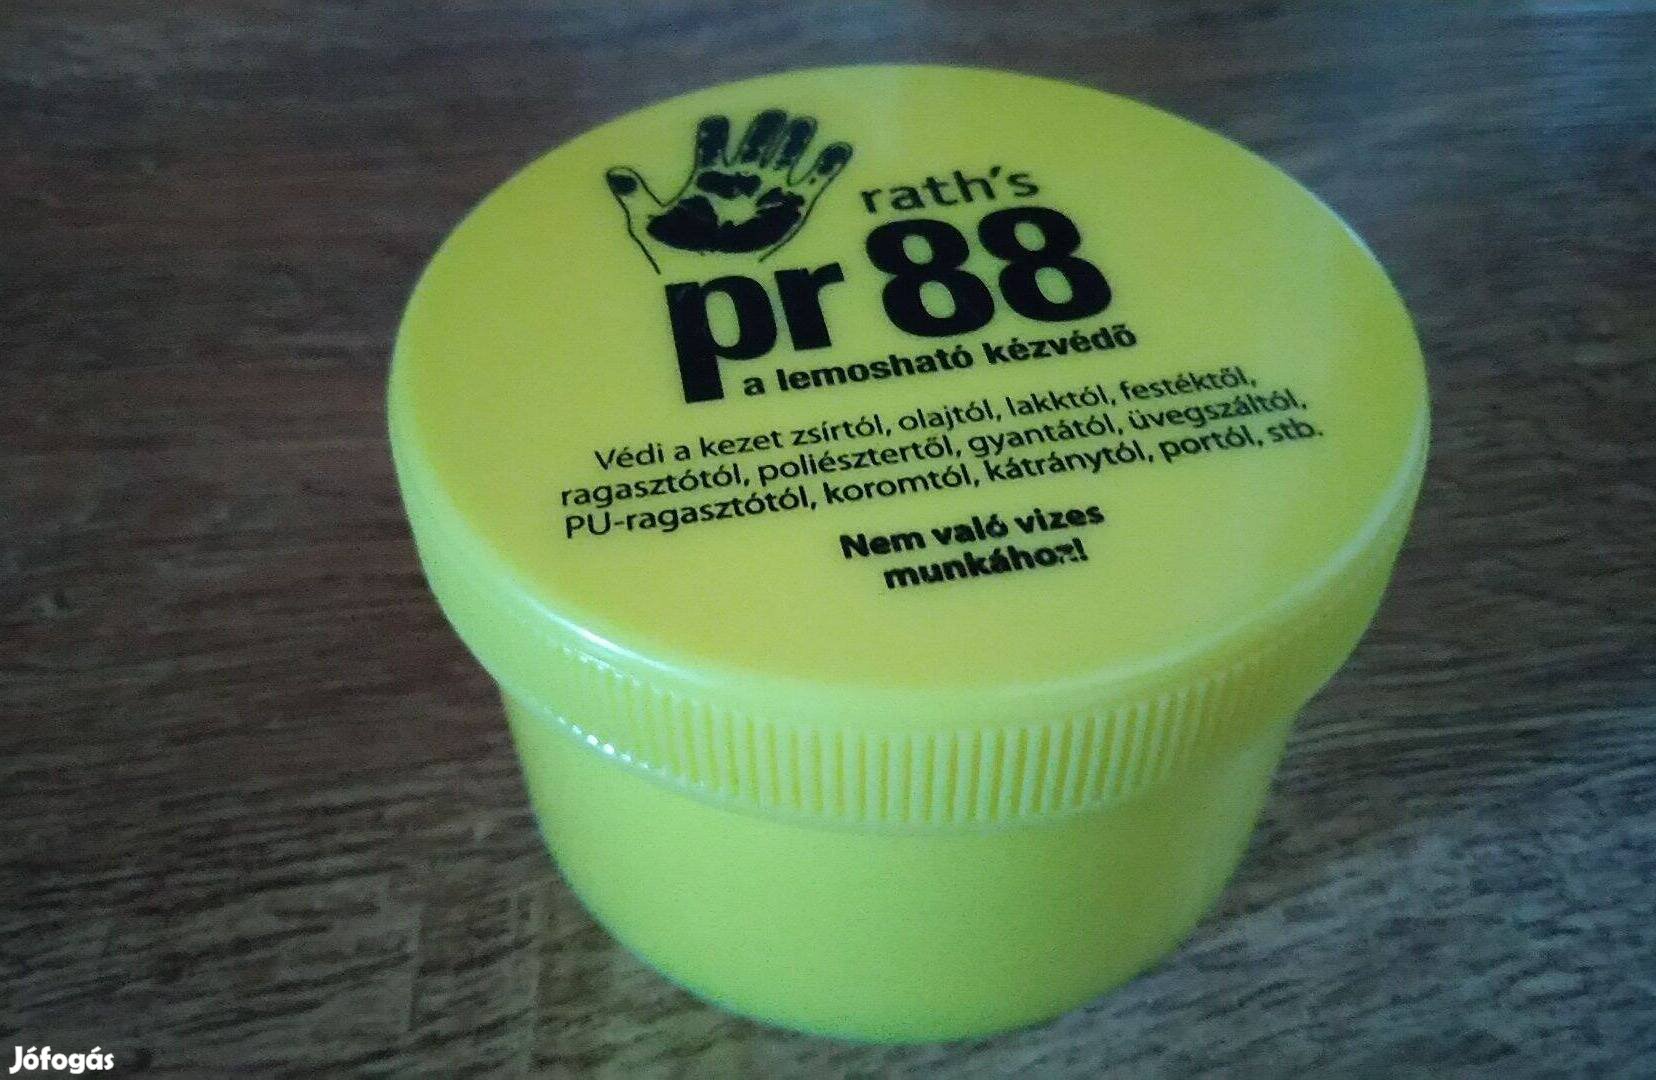 Rath's PR88 lemosható kézvédő folyékony kesztyű